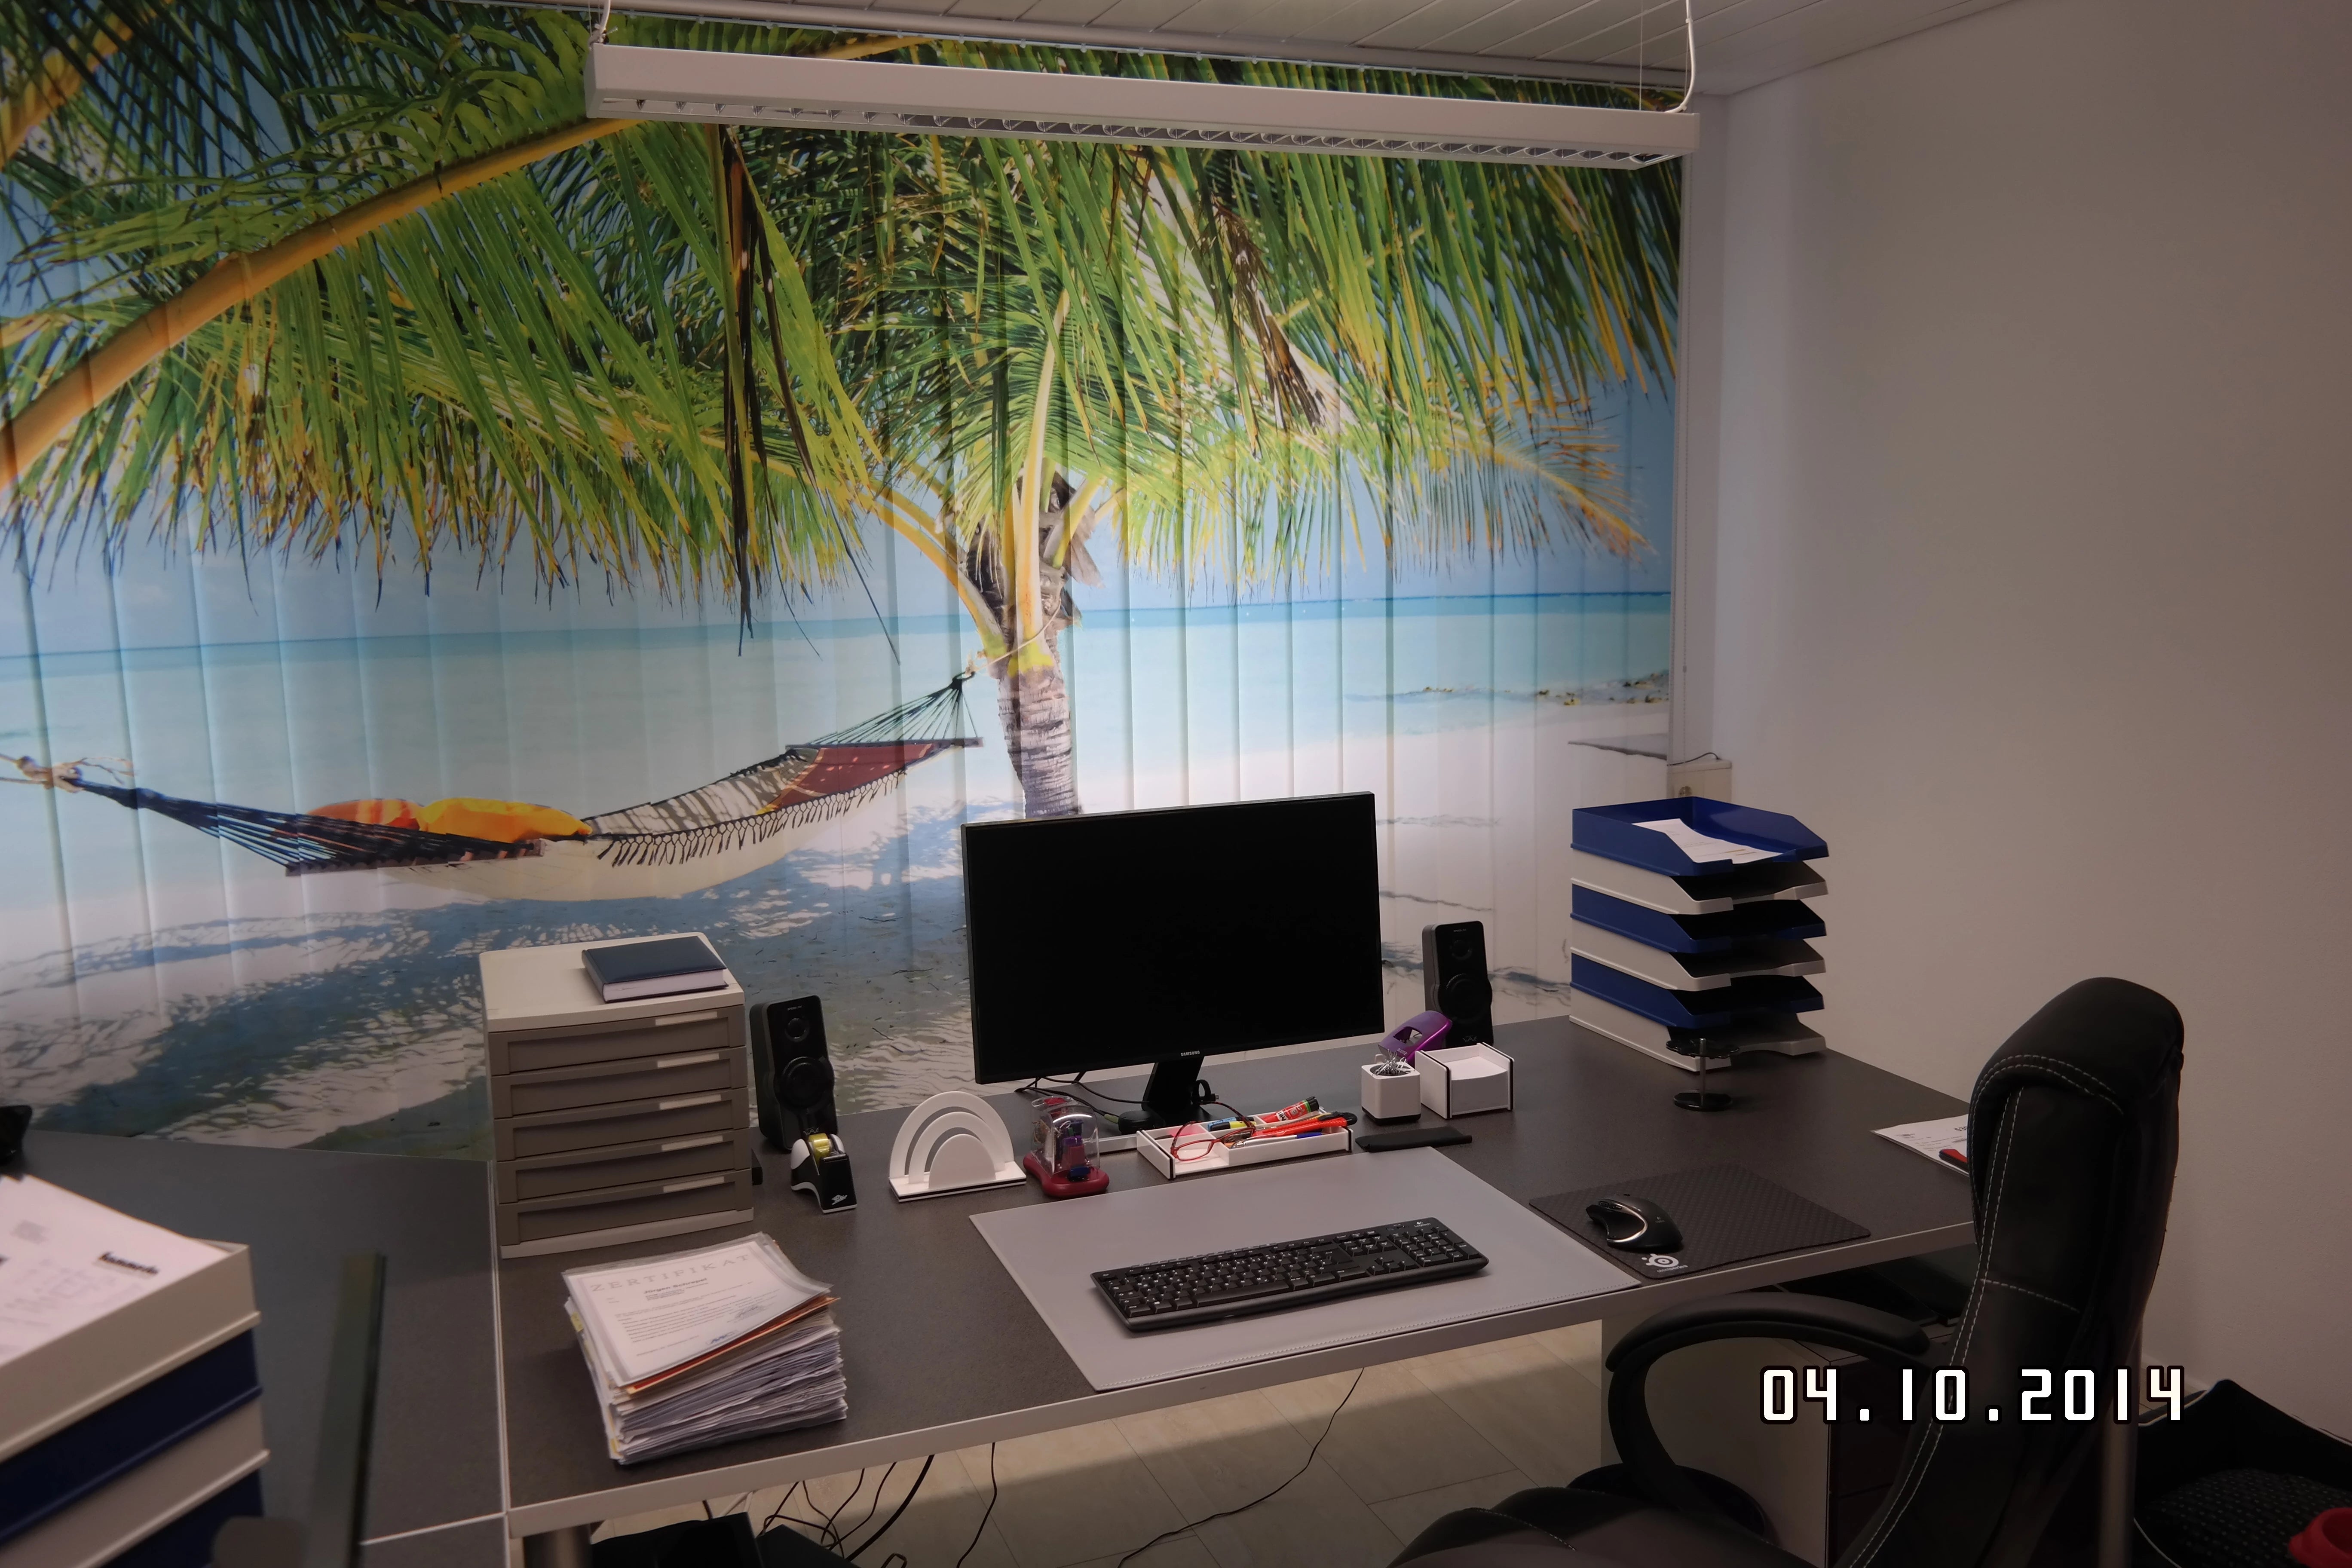 ein Büro mit Fensterfront, vor dem ein großer mit Palmen bedruckter Lamellenvorhang am Strand hängt für ein bisschen Urlaubsfeeling und zum träumen